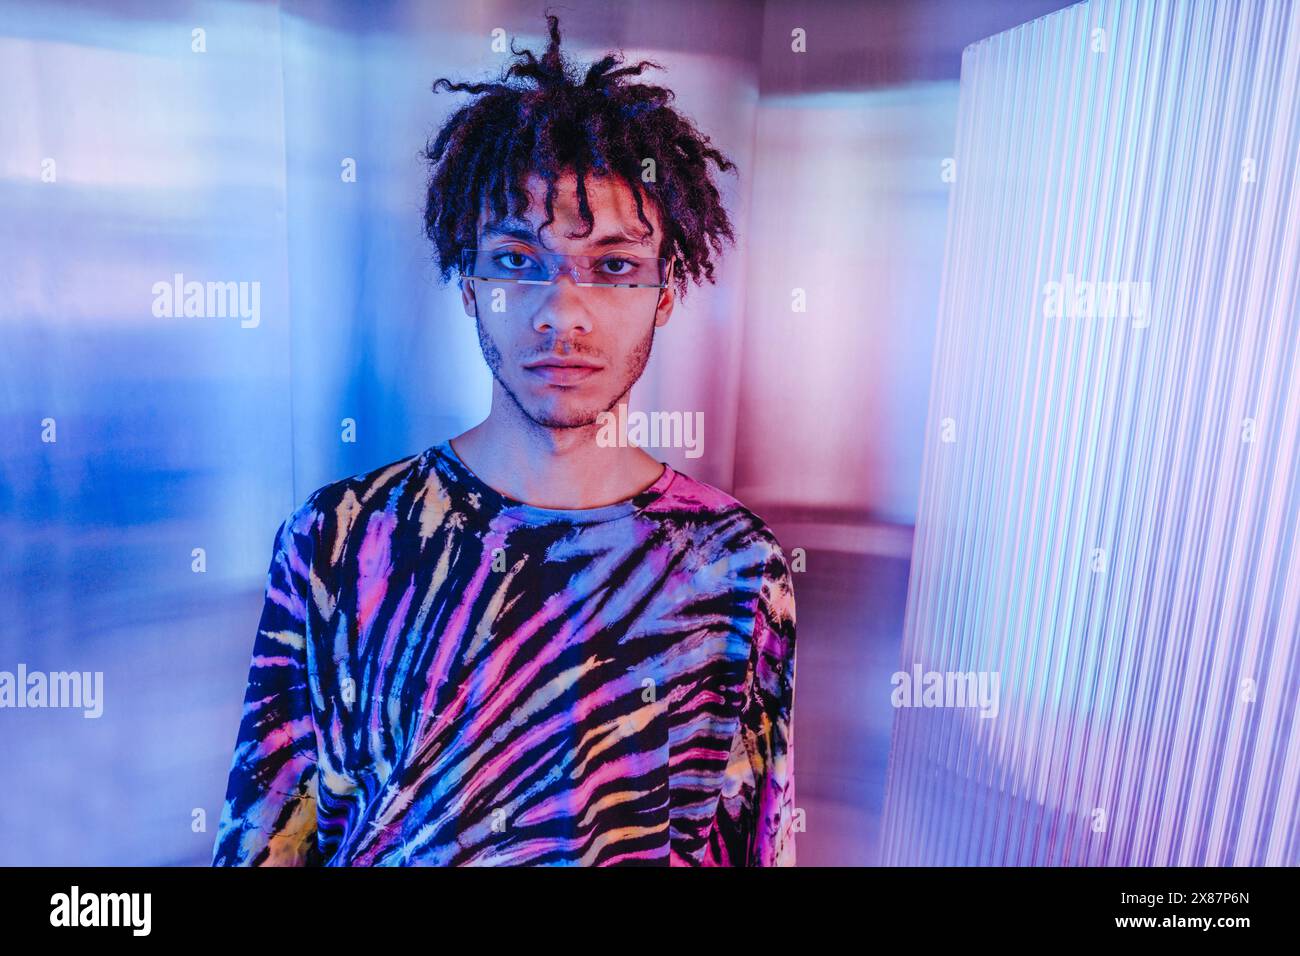 Uomo serio con casuali colorati vicino a sfondo illuminato Foto Stock